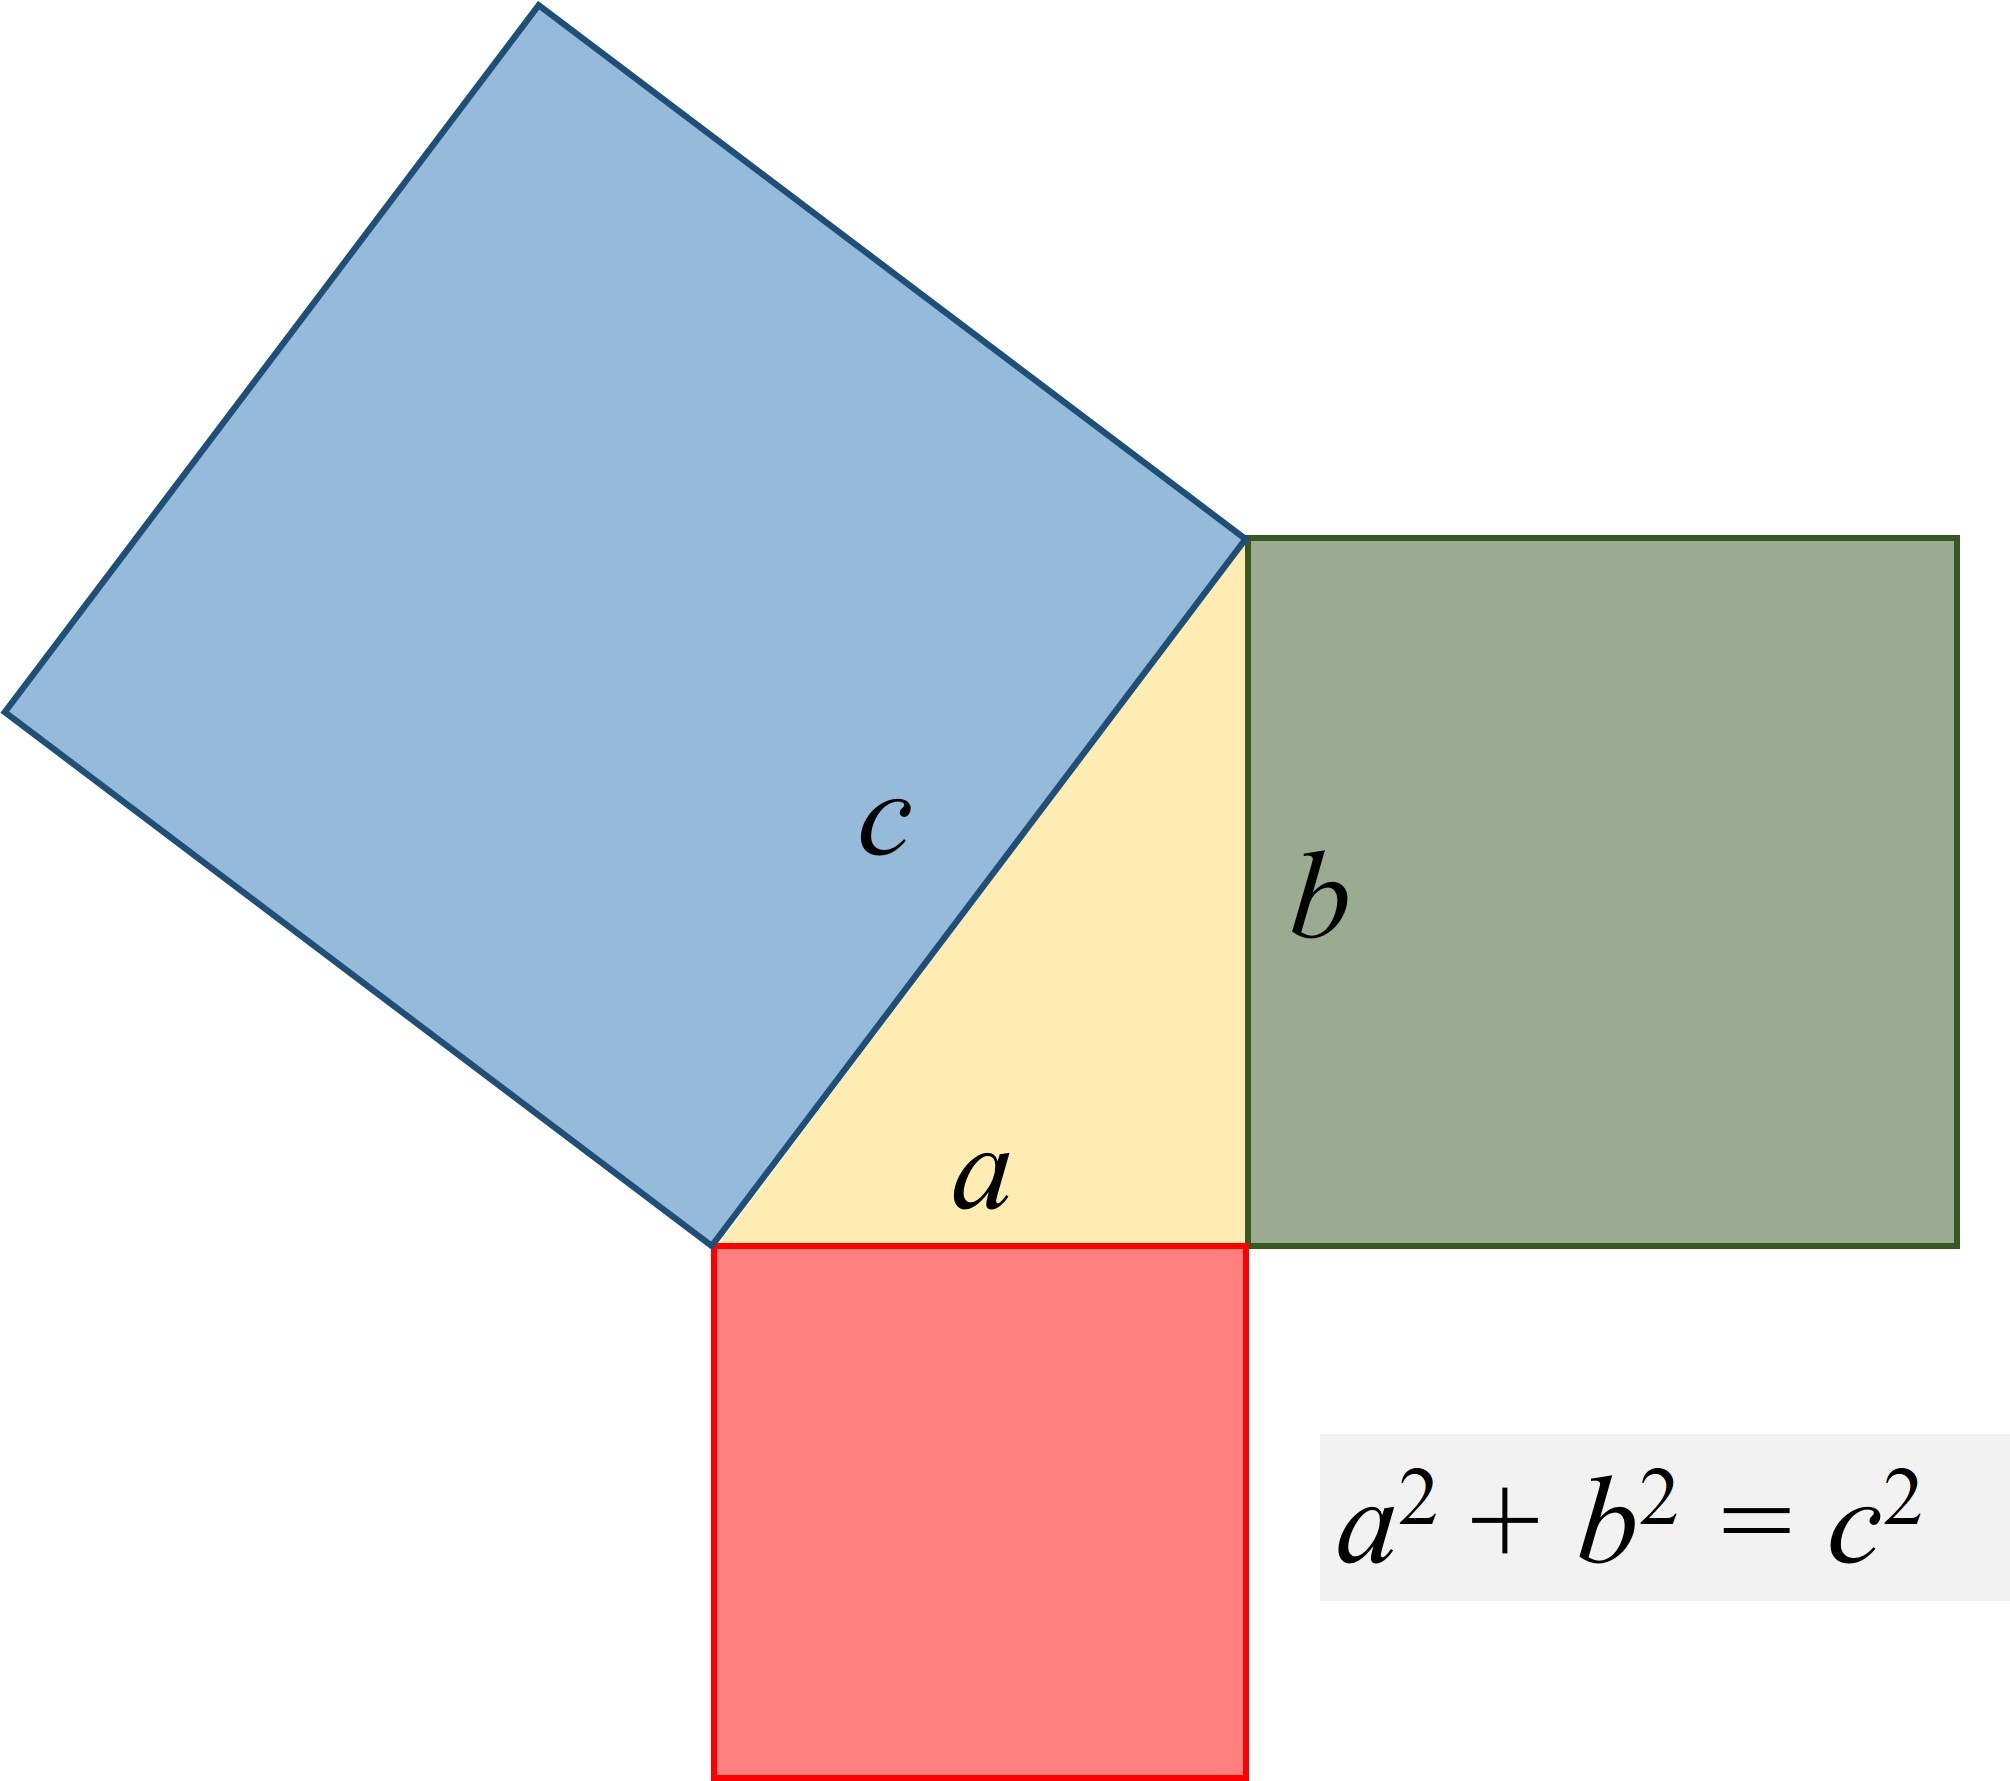 teorema de pitágoras inverso - Grado 3 - Quizizz